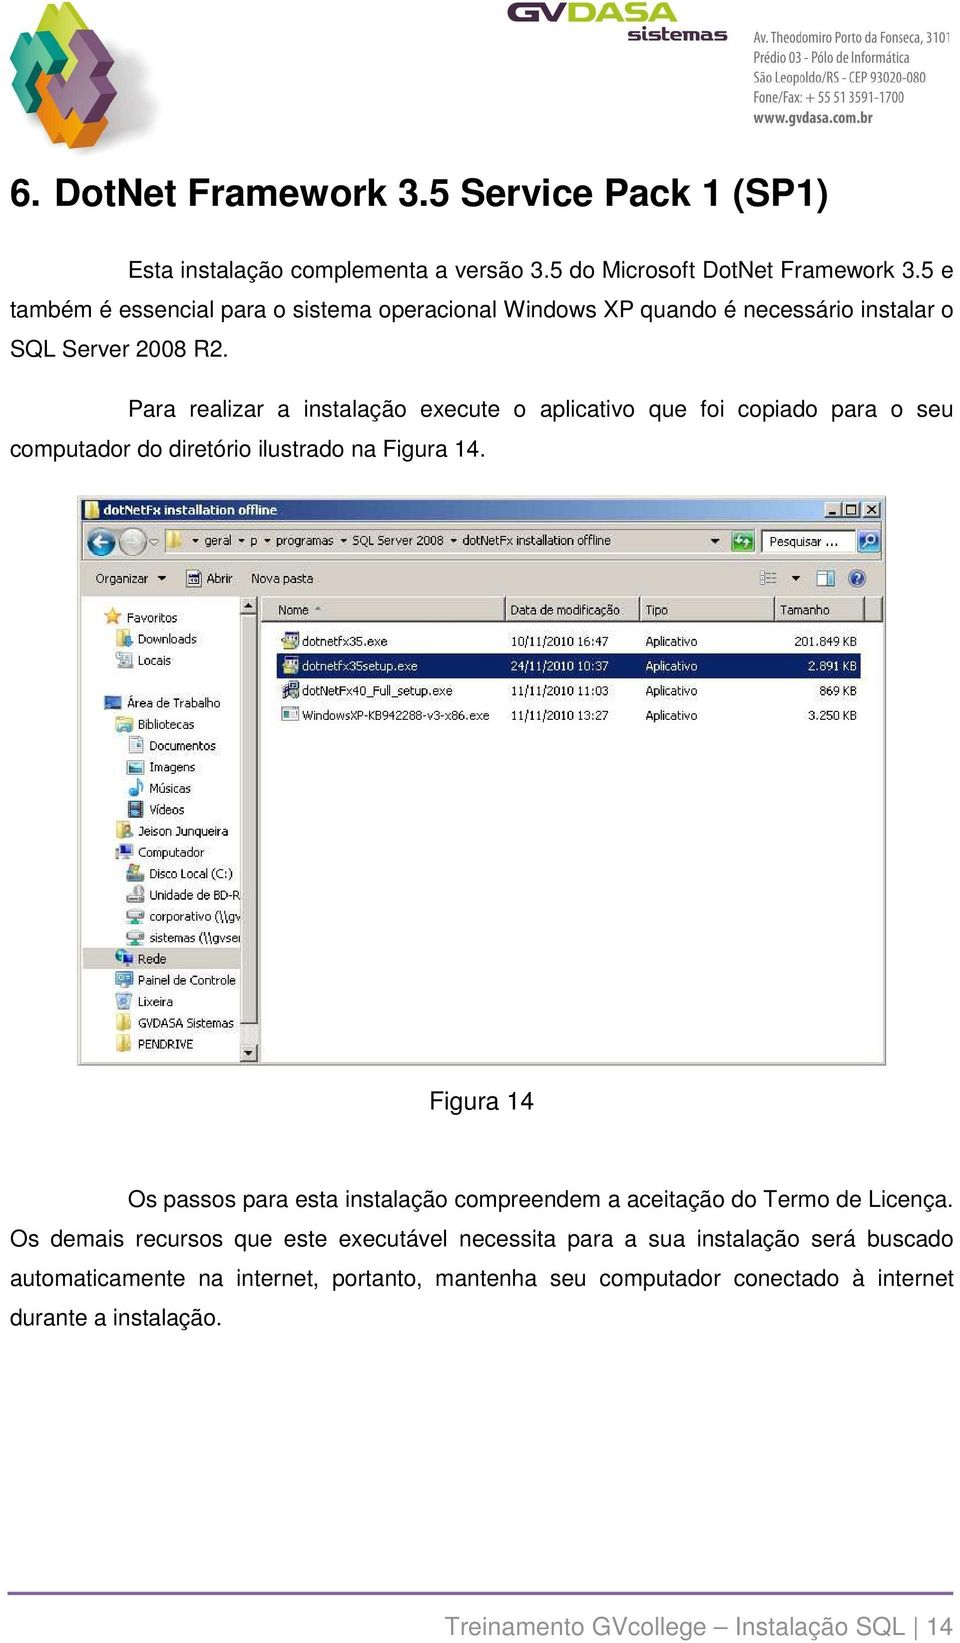 Para realizar a instalação execute o aplicativo que foi copiado para o seu computador do diretório ilustrado na Figura 14.